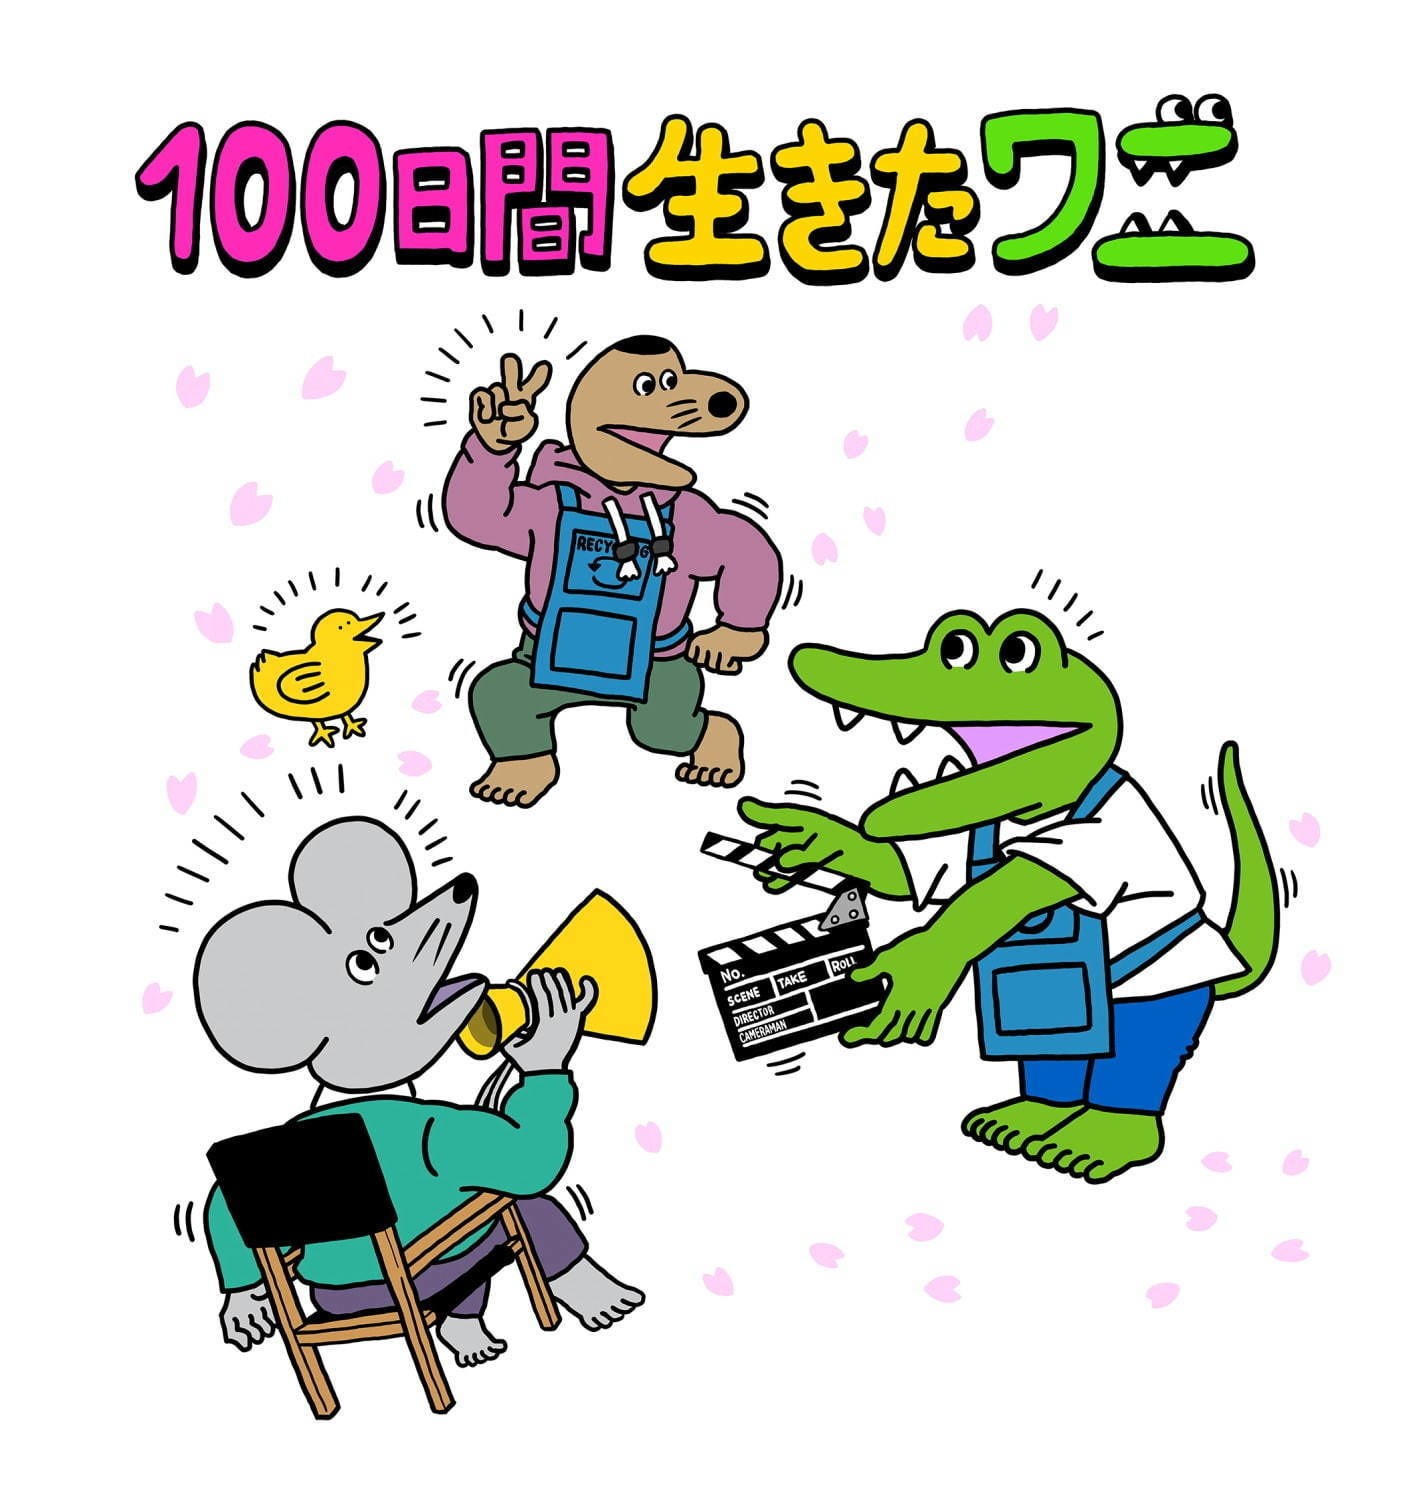 《100 天后会死的鳄鱼》改编动画电影《活了 100 天的鳄鱼》6 月全台上映